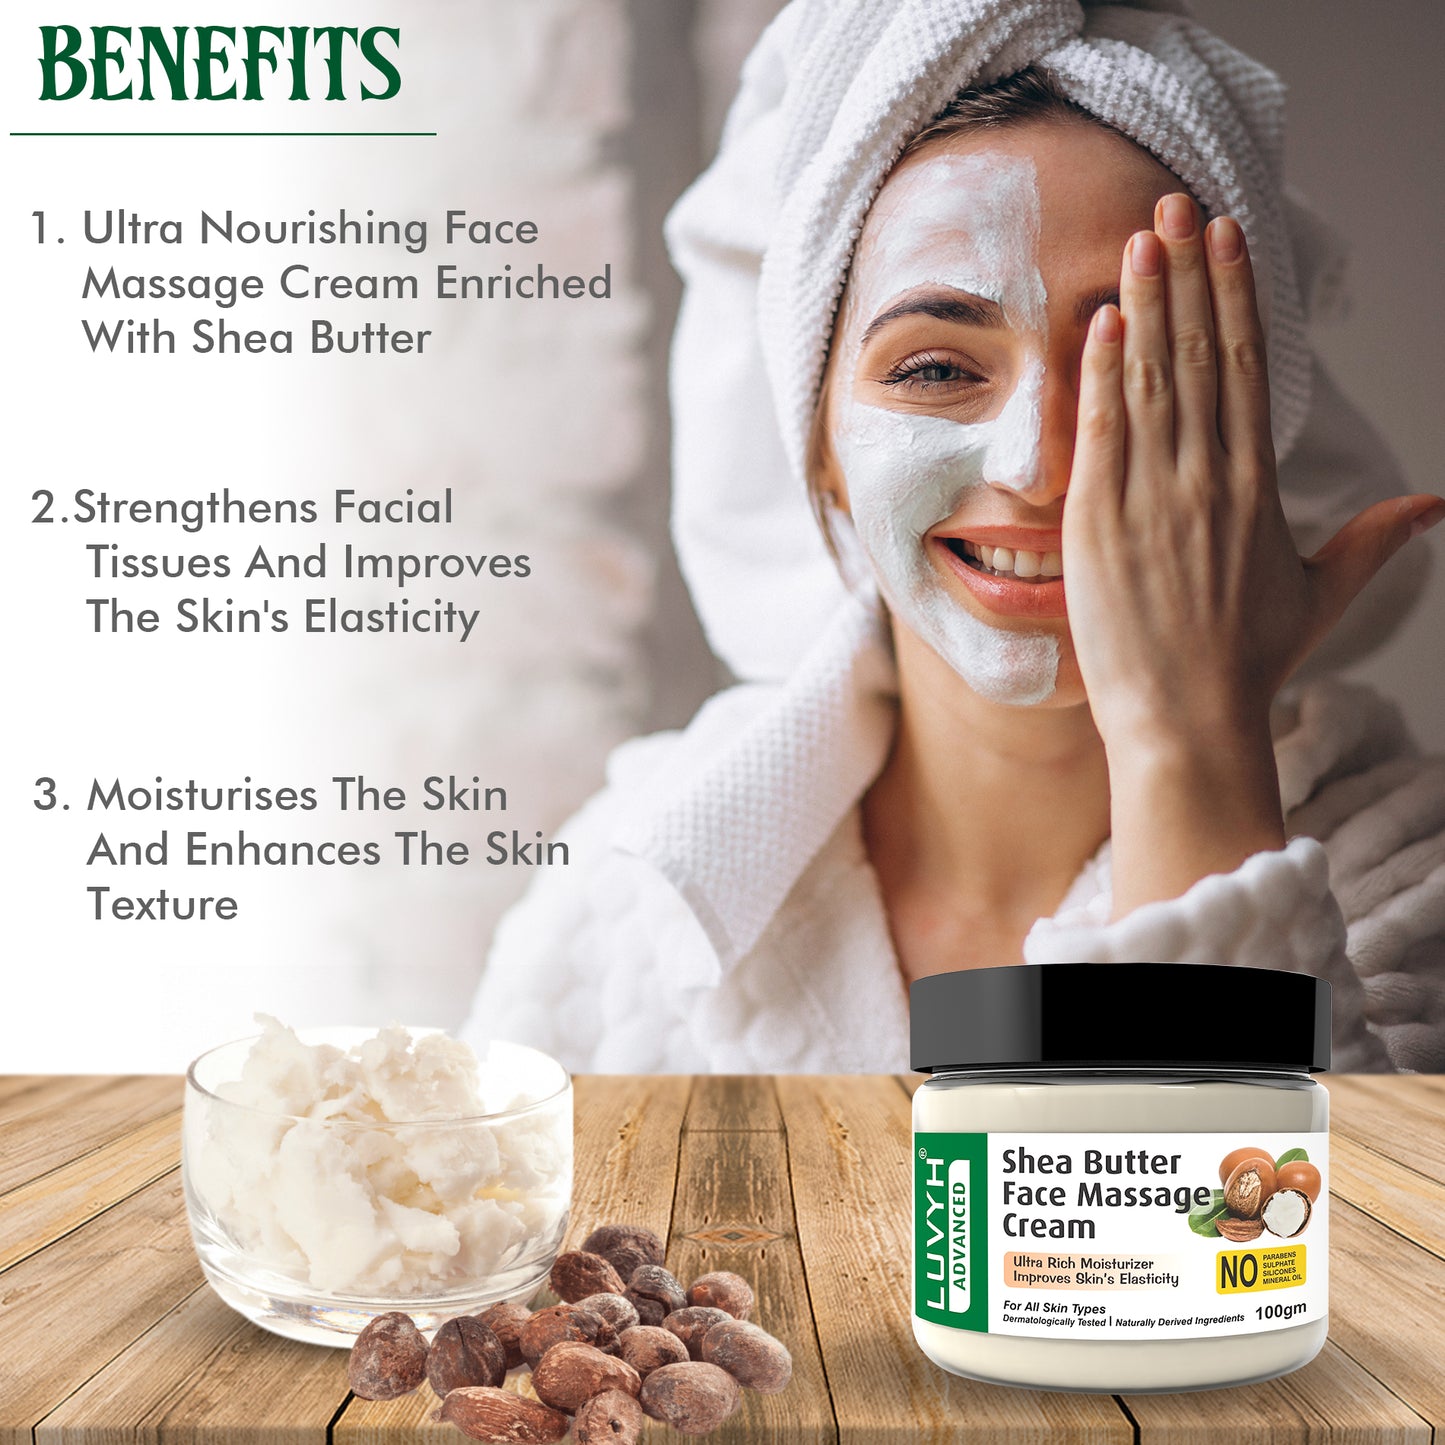 Benefits of Shea Butter Face Massage Cream